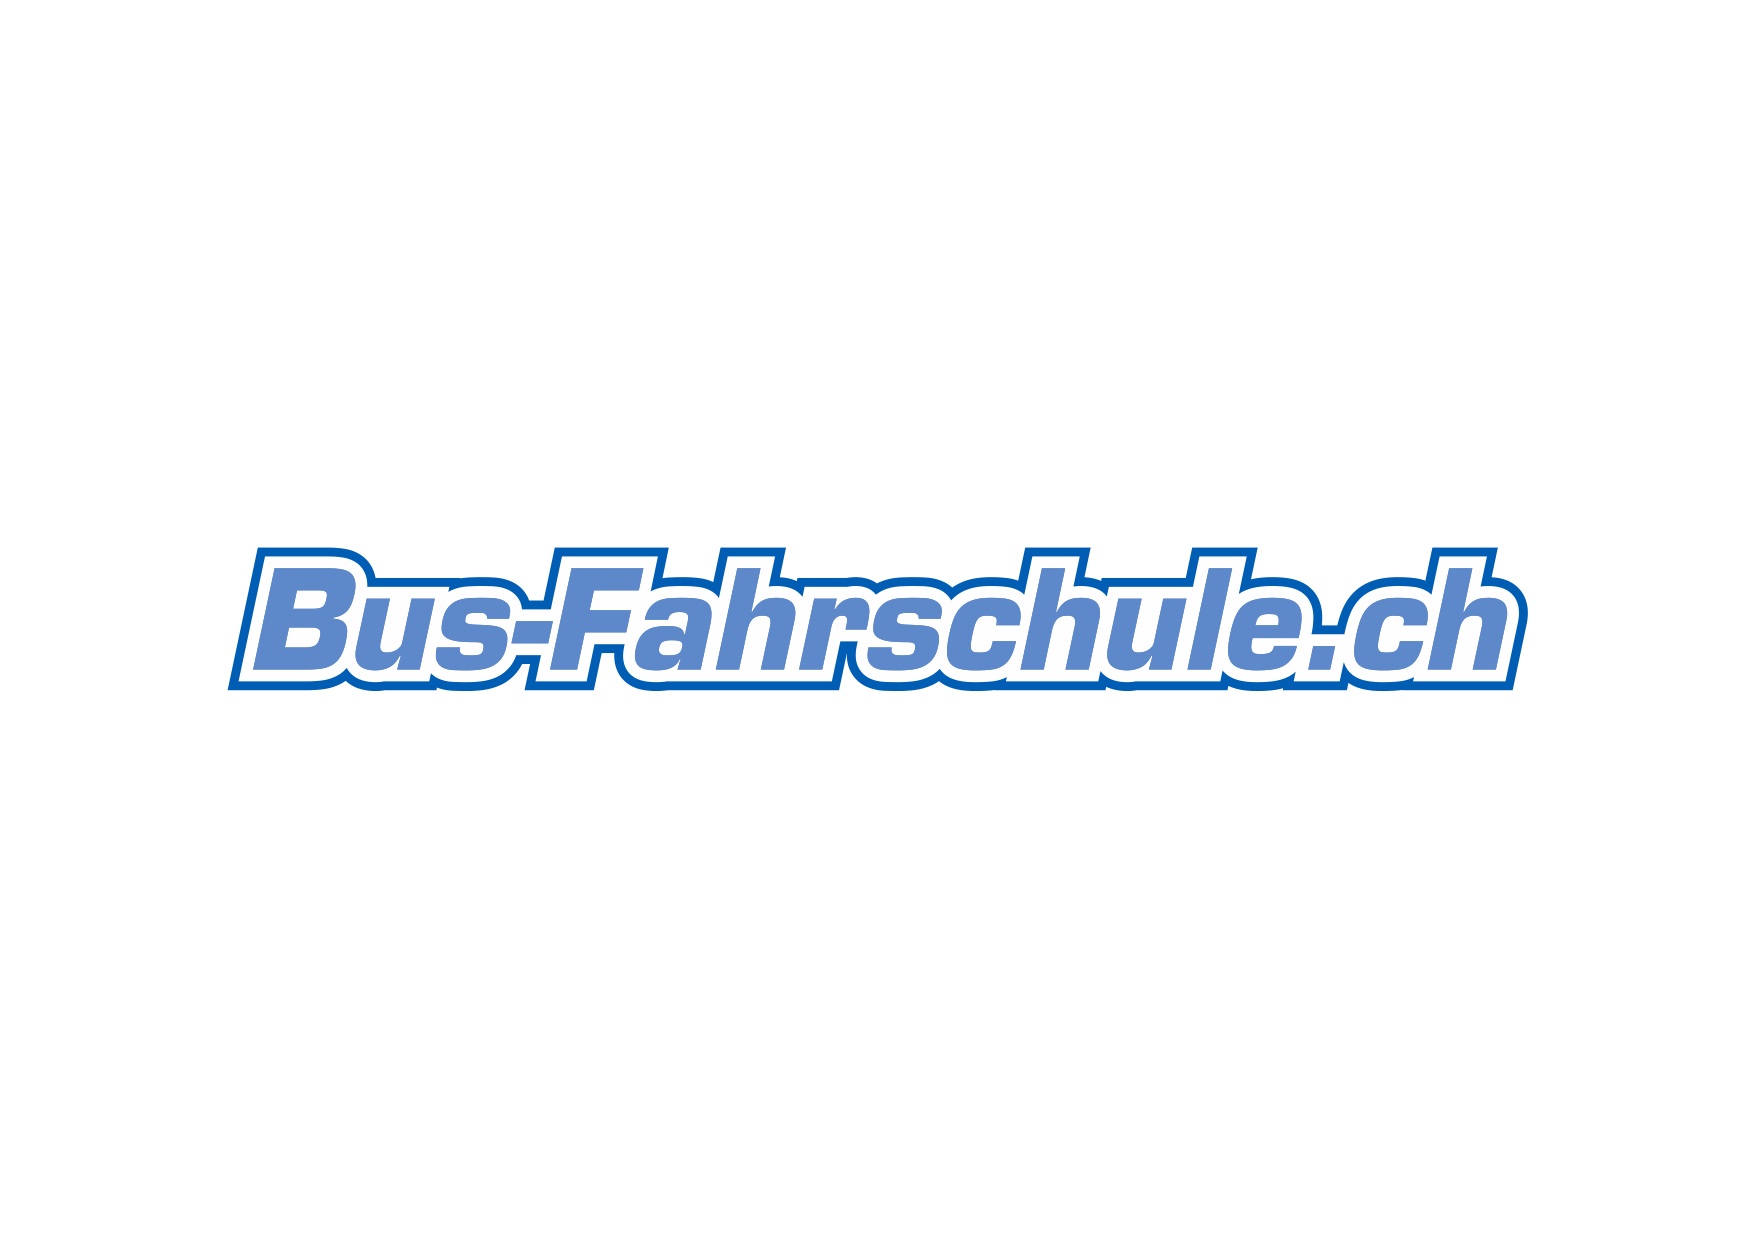 Images Bus-Fahrschule.ch